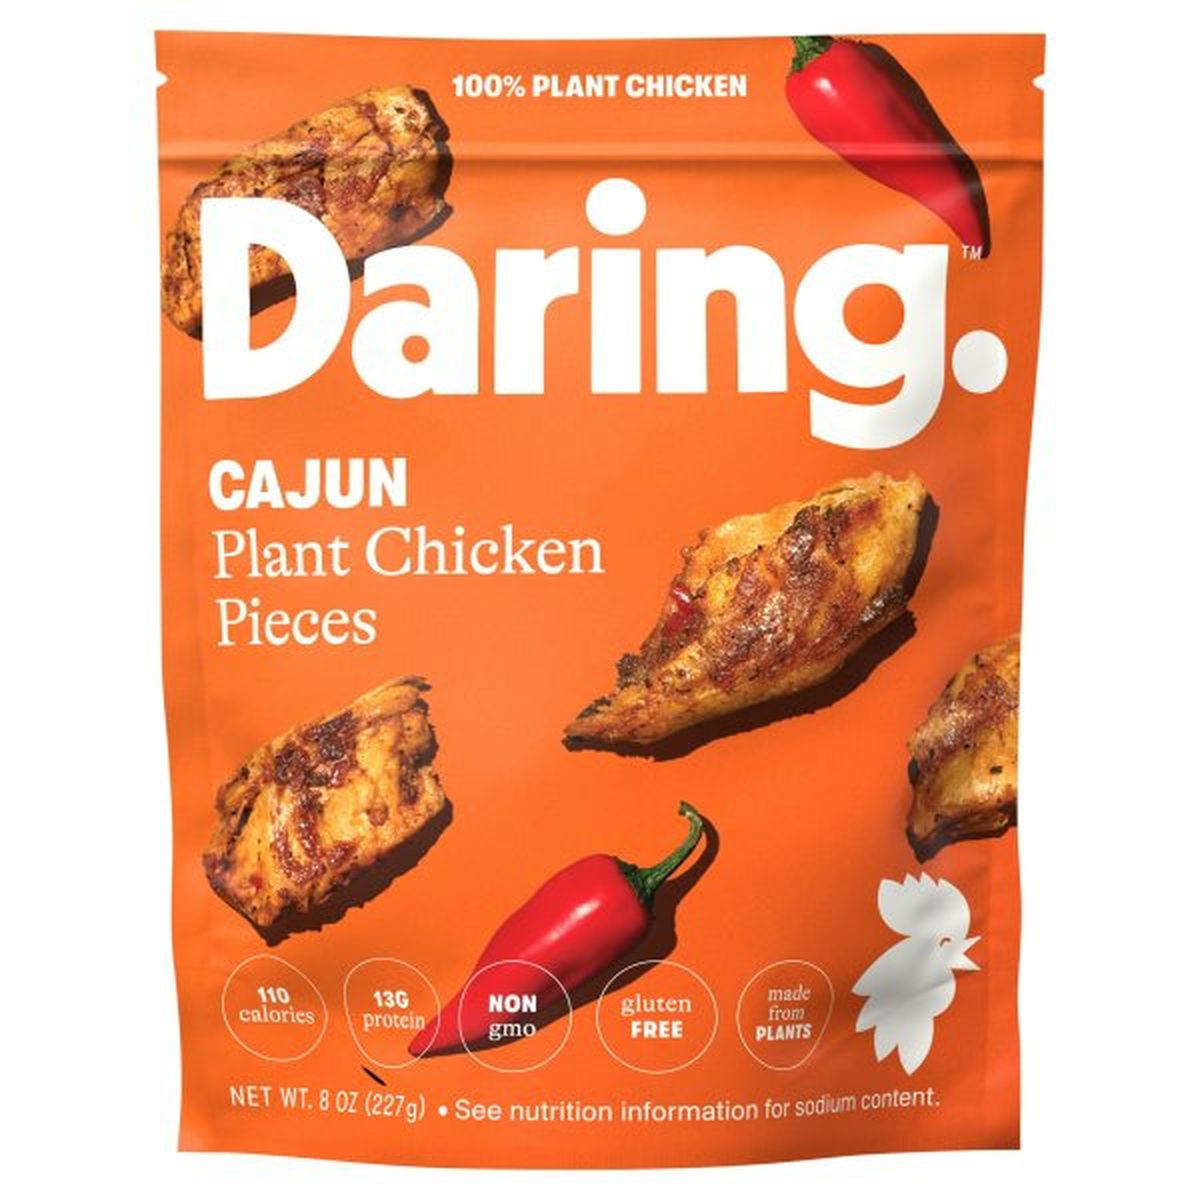 Calories in Daring Plant Chicken Pieces, Cajun